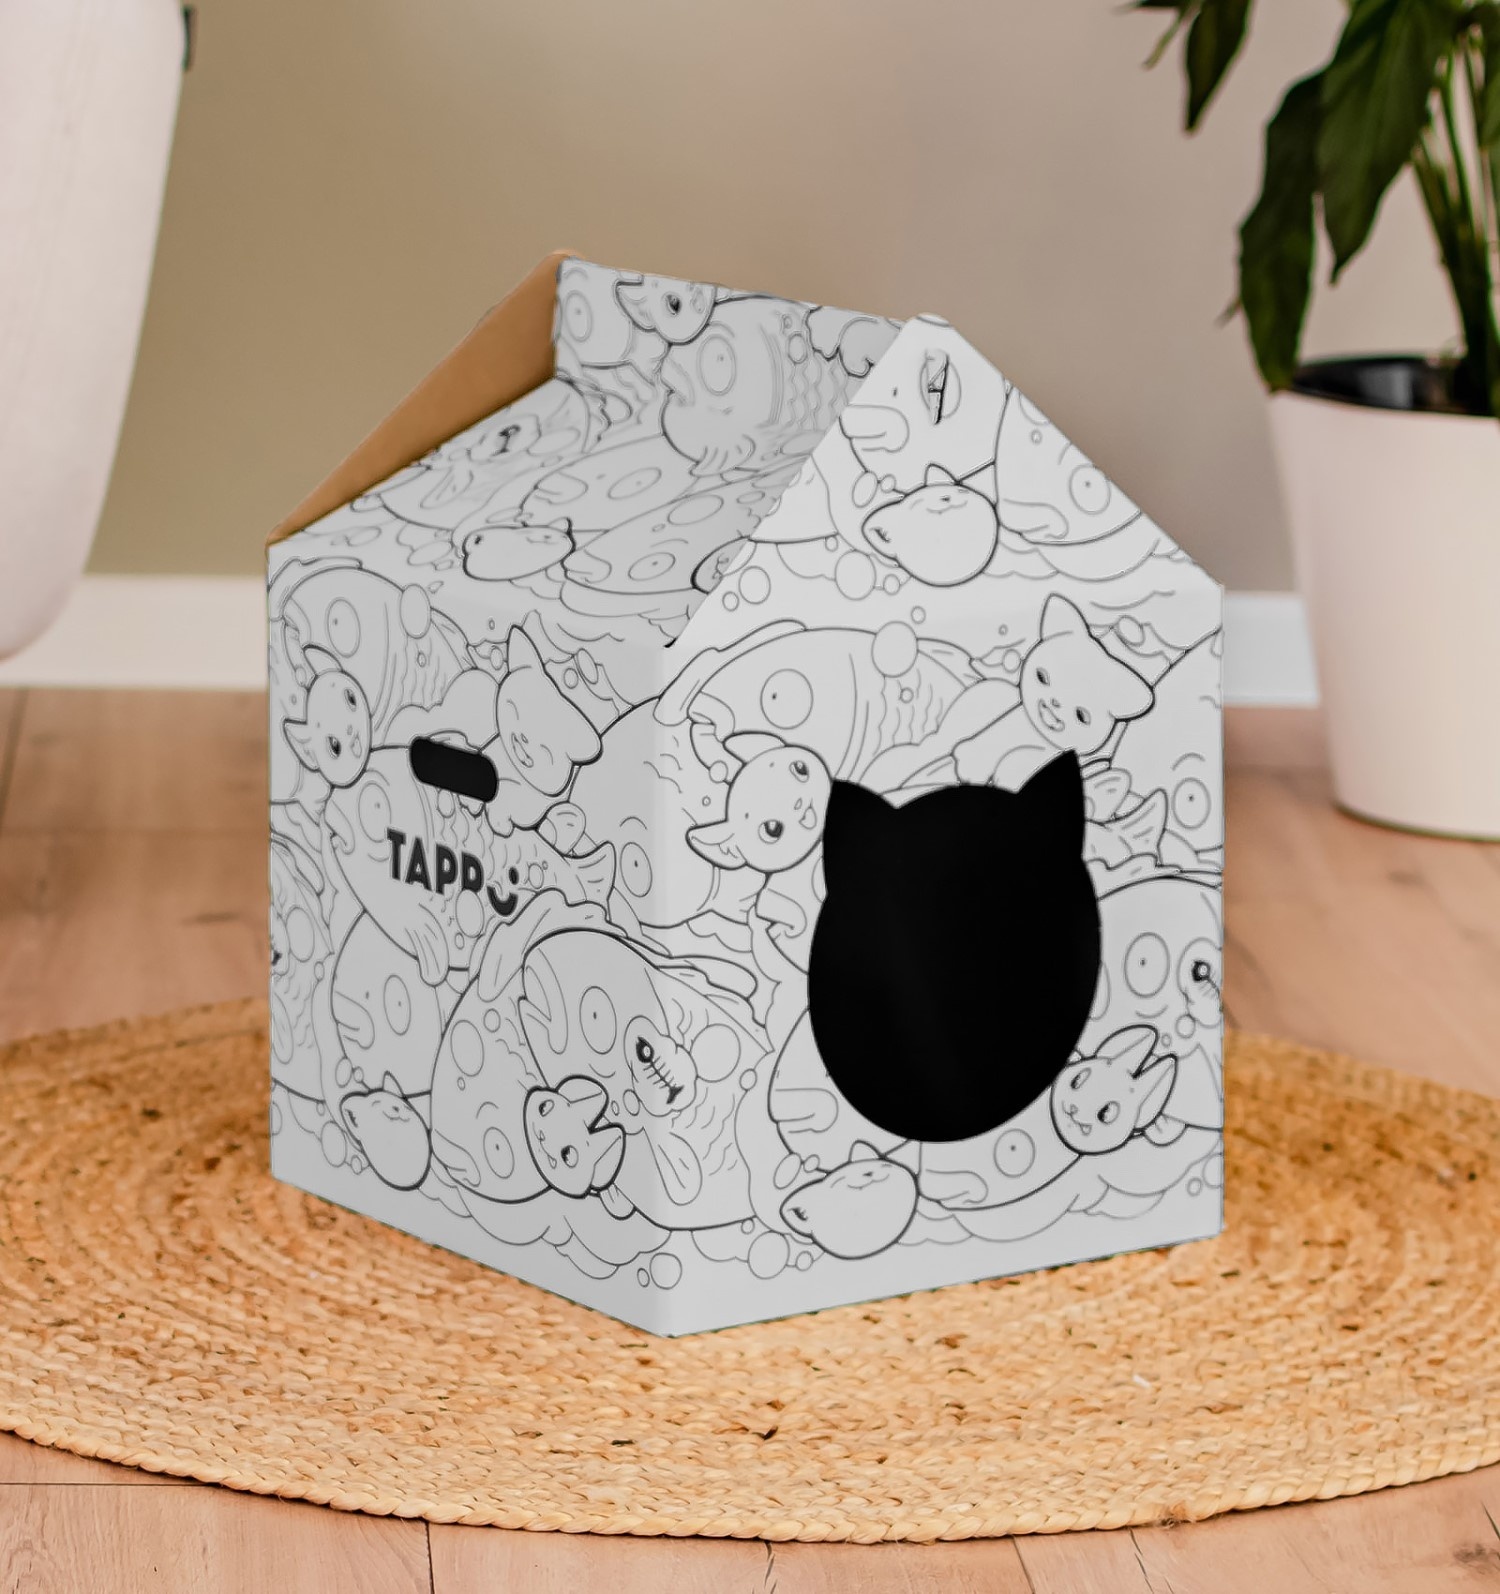 Tappi когтеточки Tappi когтеточки картонный домик для животных Бакэнэко (360 г) часы и домик